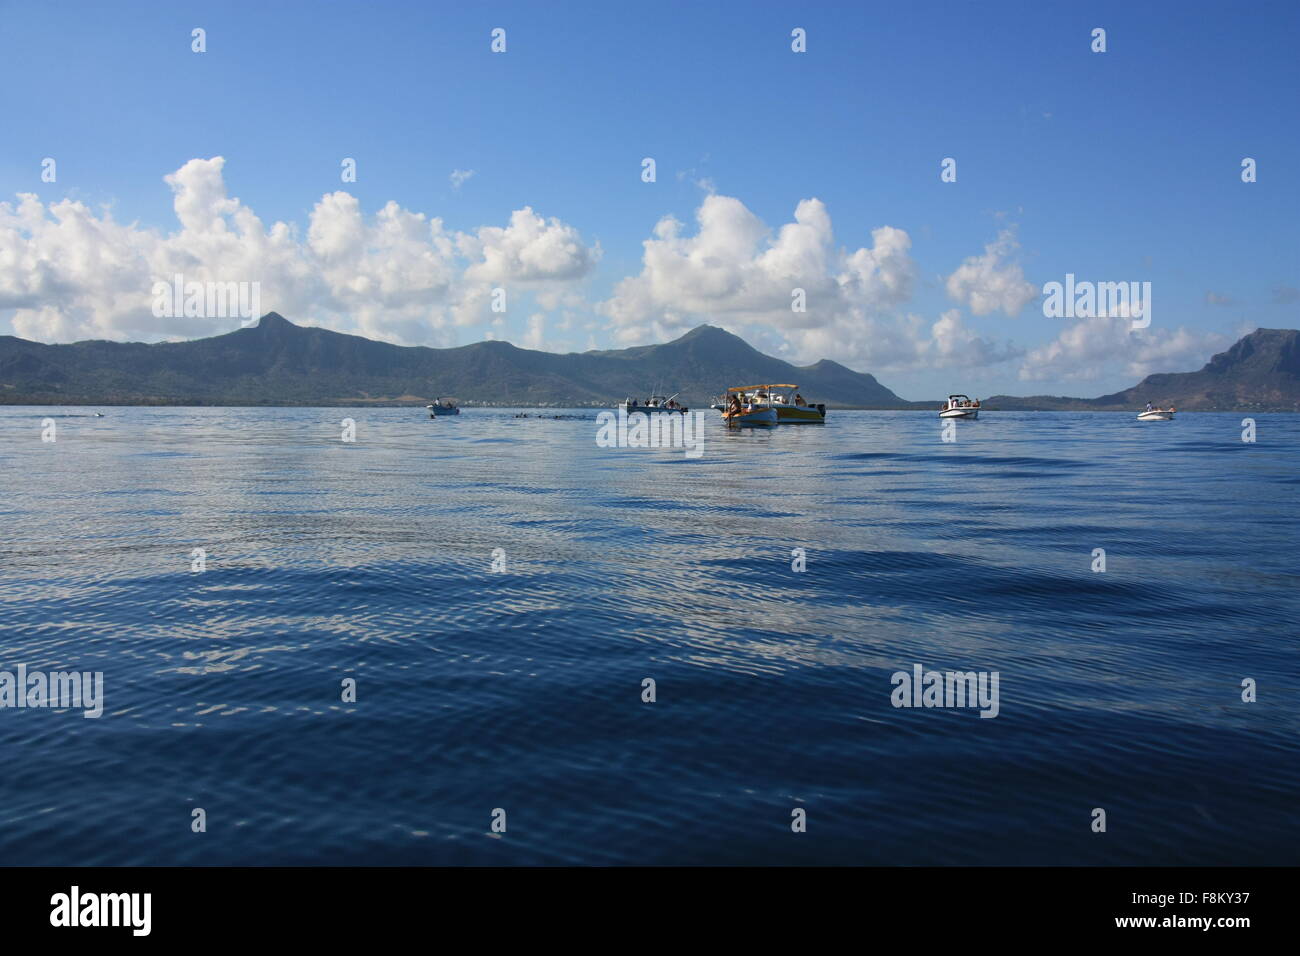 Mauritius, Indian Ocean, Tamarin Bay Stock Photo - Alamy